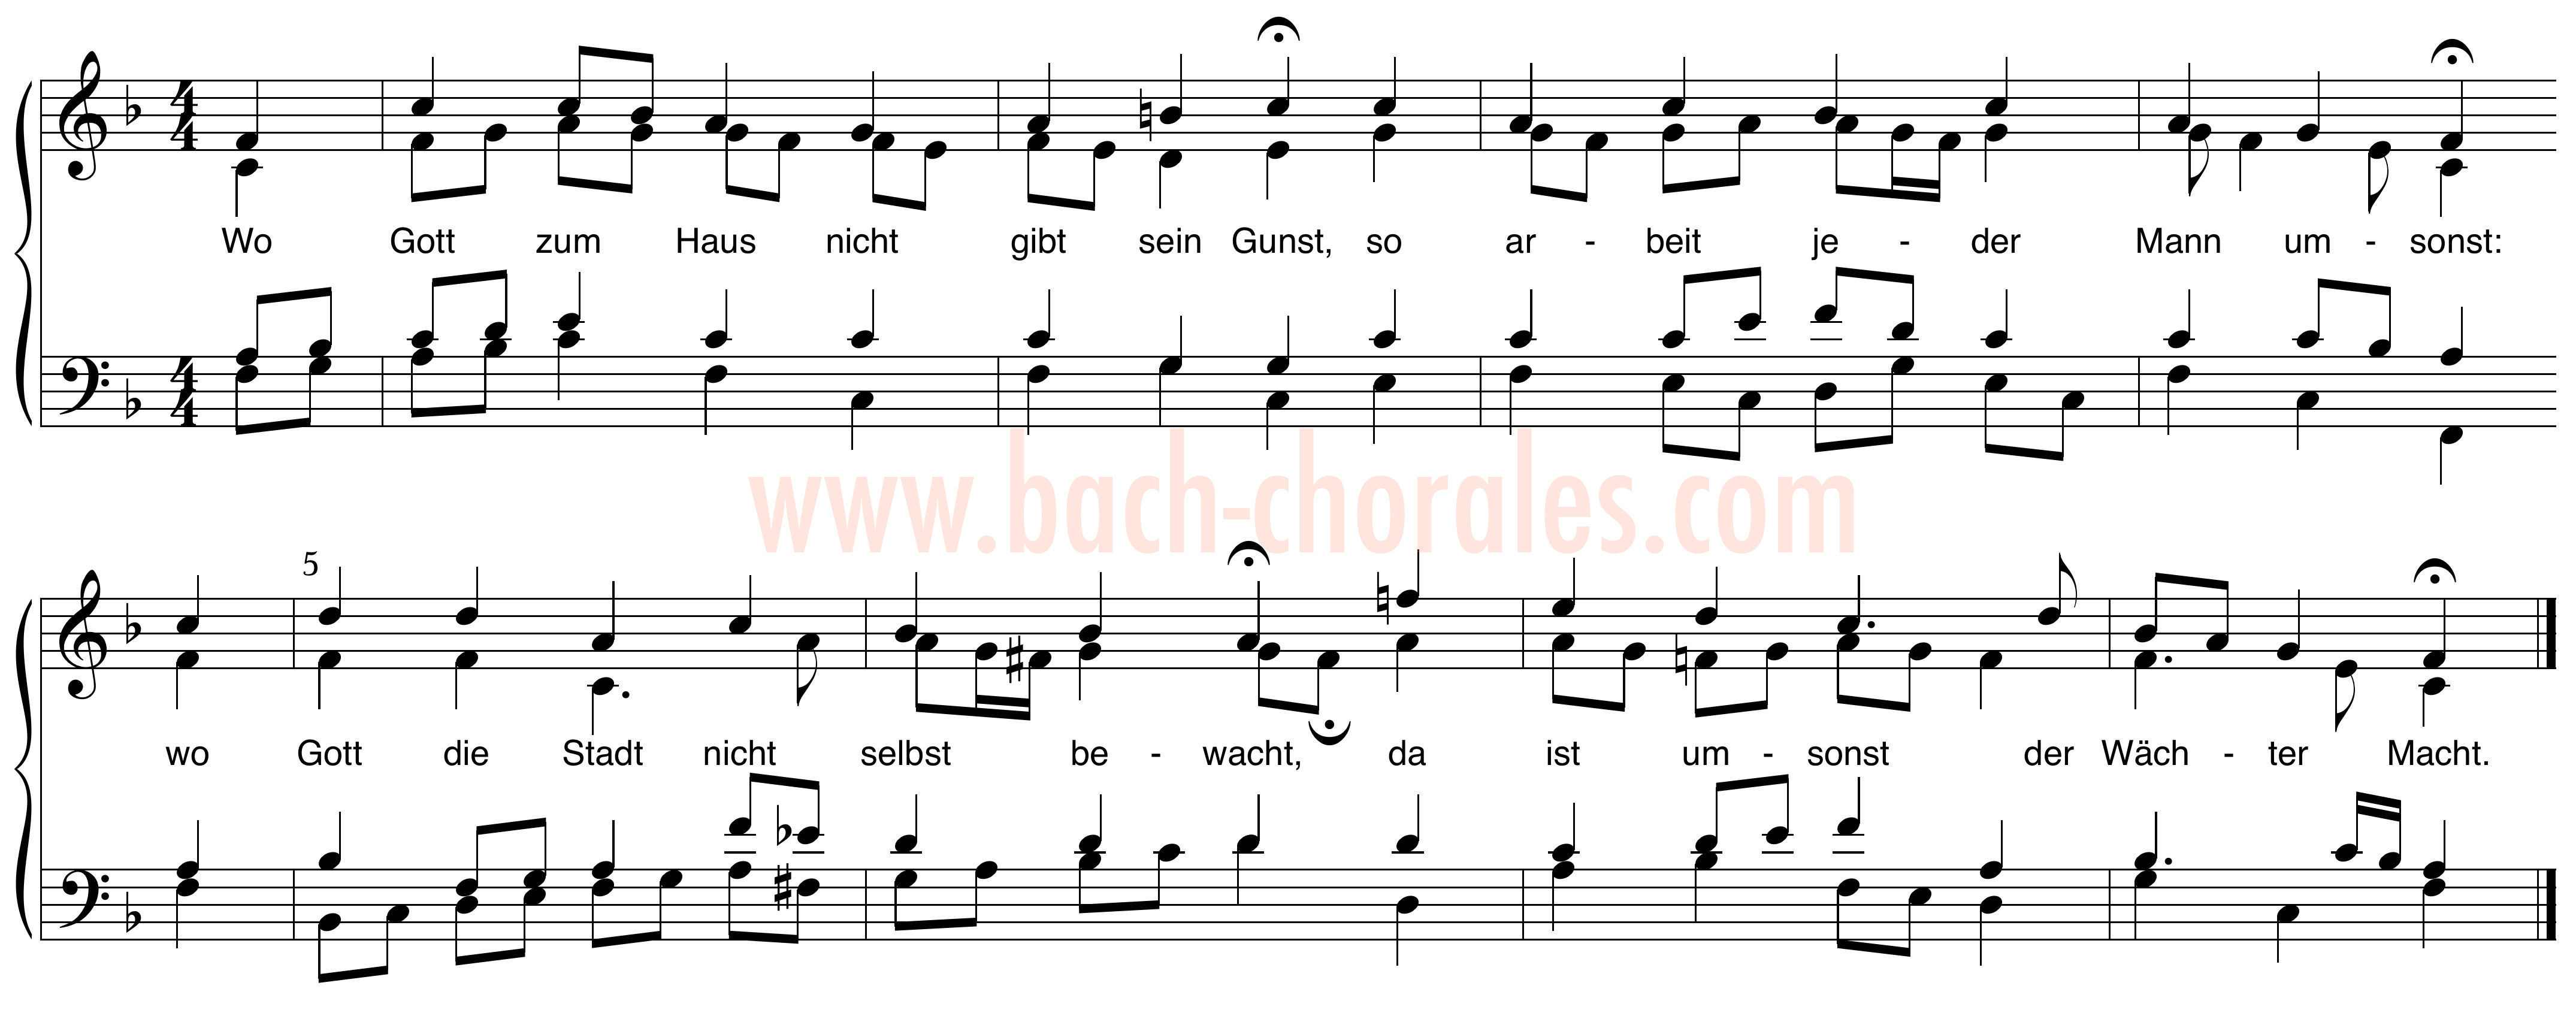 notenbeeld BWV 438 op https://www.bach-chorales.com/